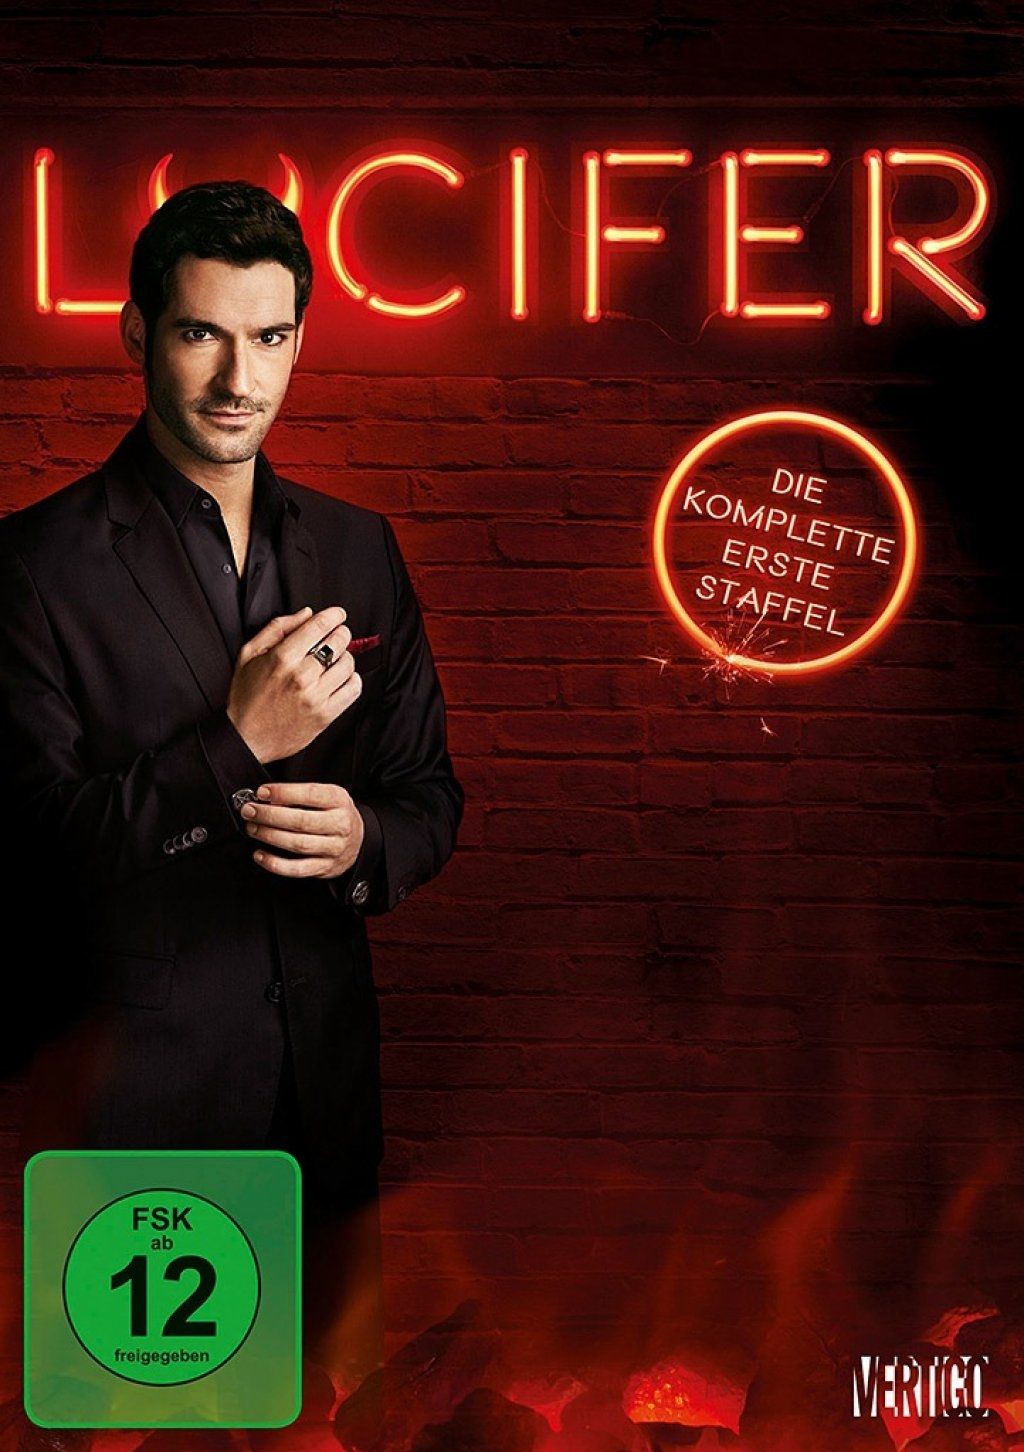 Lucifer - Die komplette erste Staffel (3 Discs)